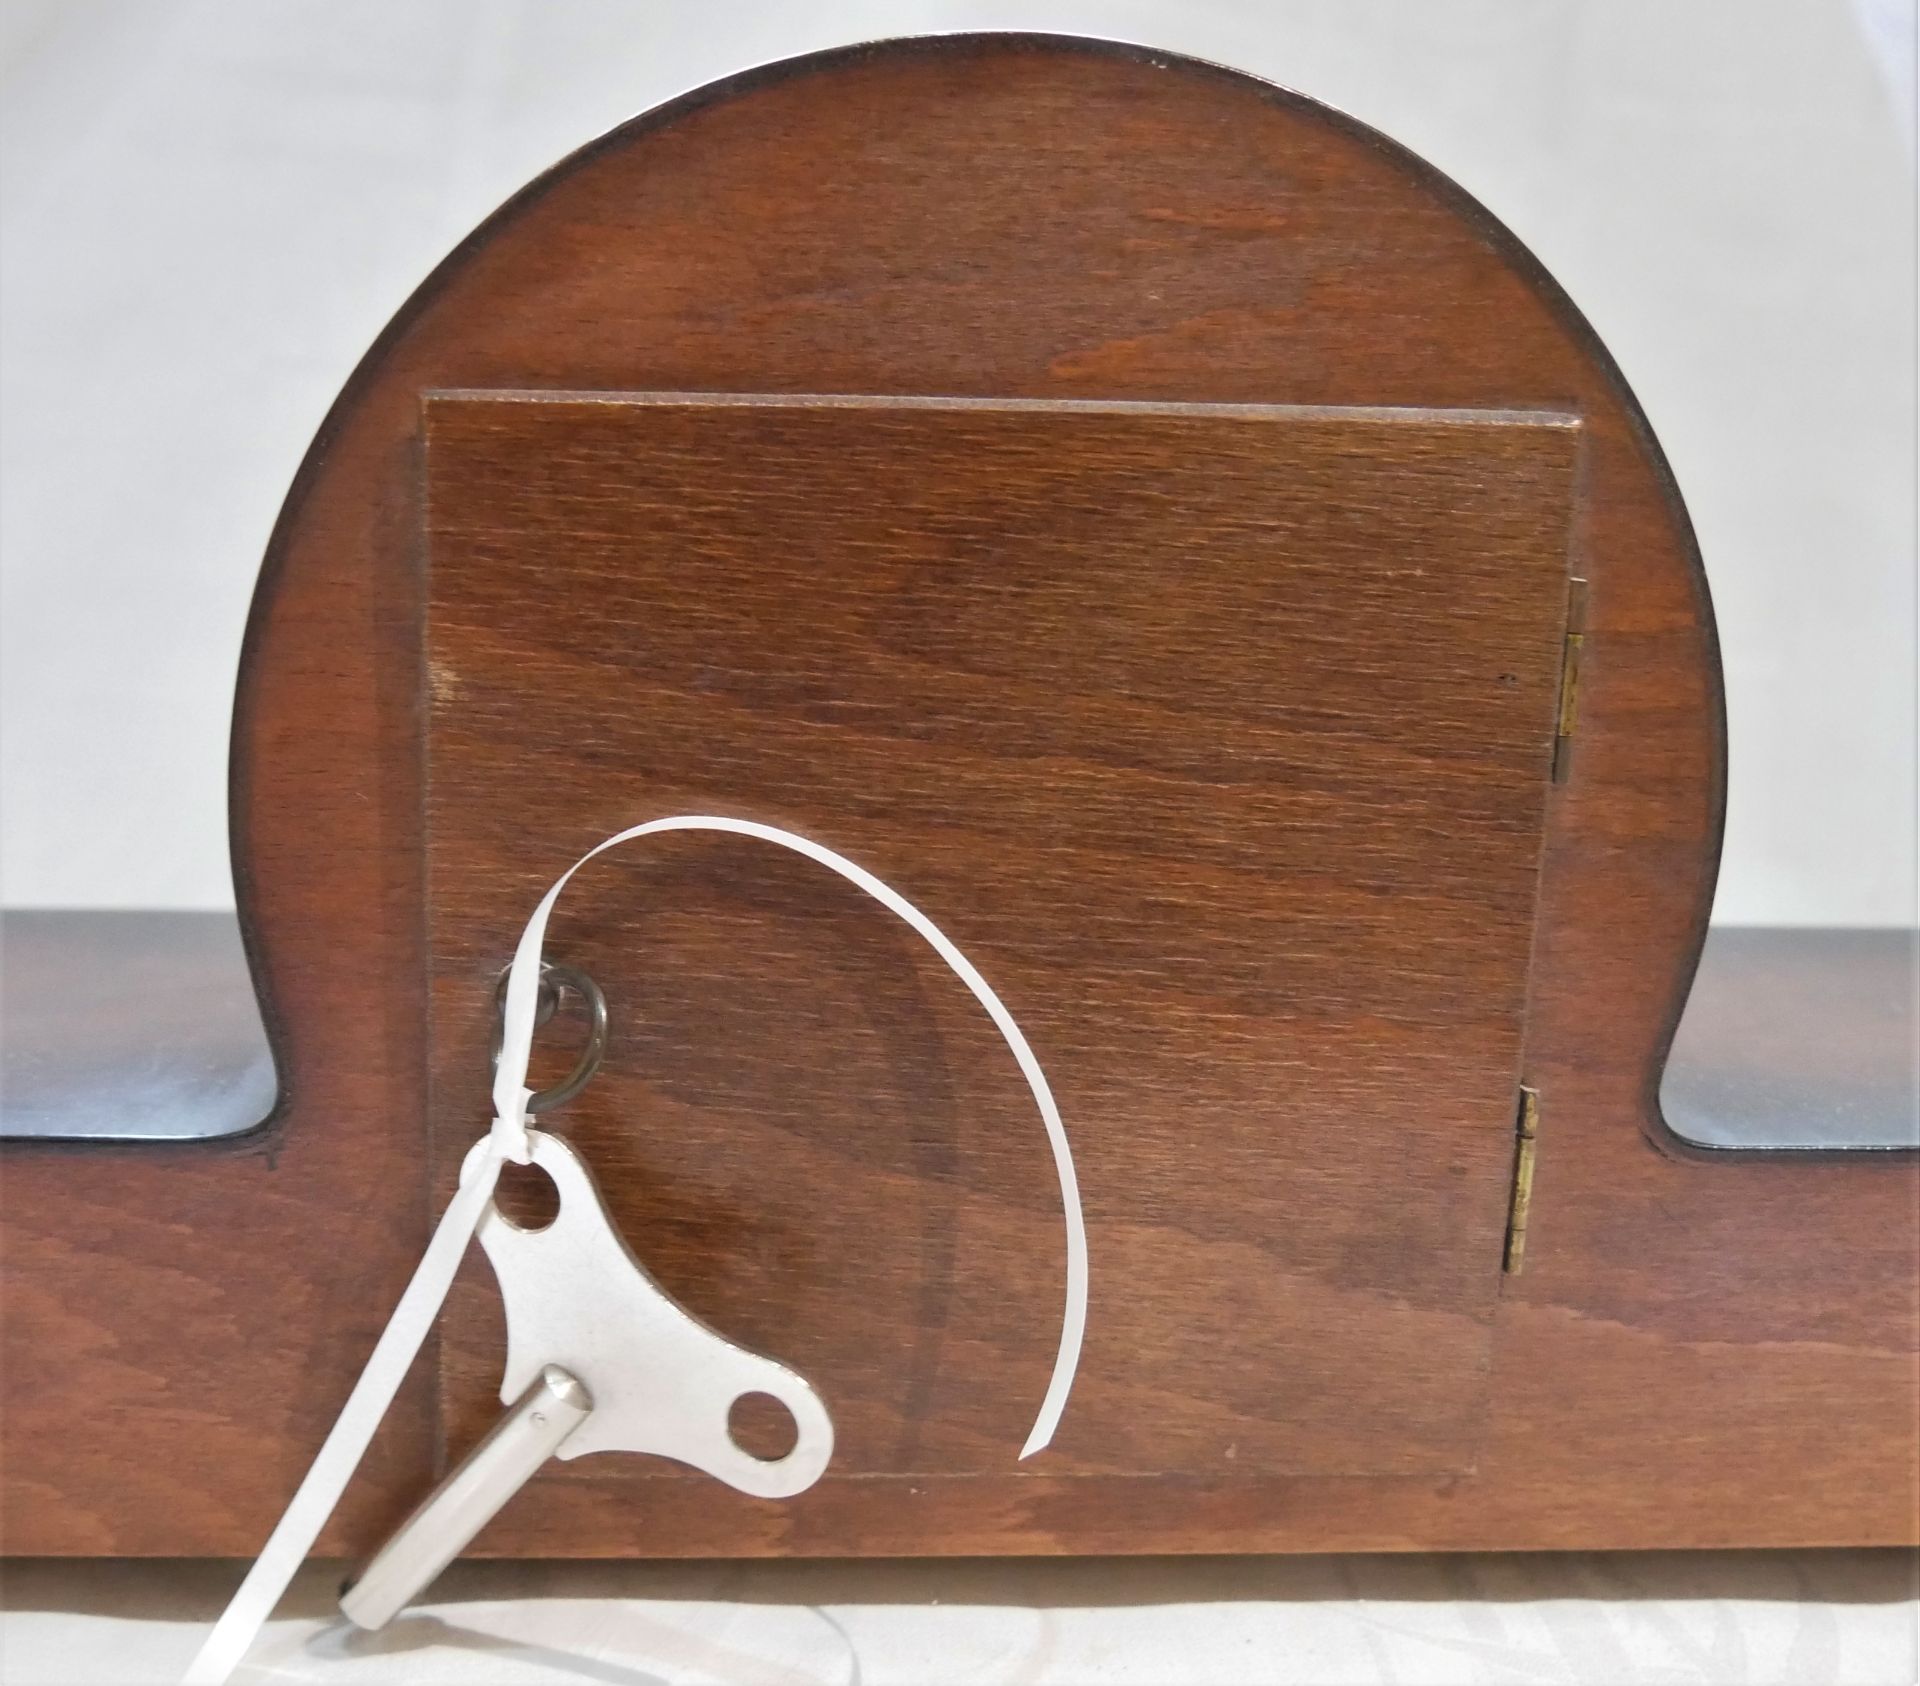 Kaminuhr / Tischuhr von Juwela mit Schlüssel. Länge ca. 54,5 cm, Höhe ca. 19,5 cm - Image 3 of 3